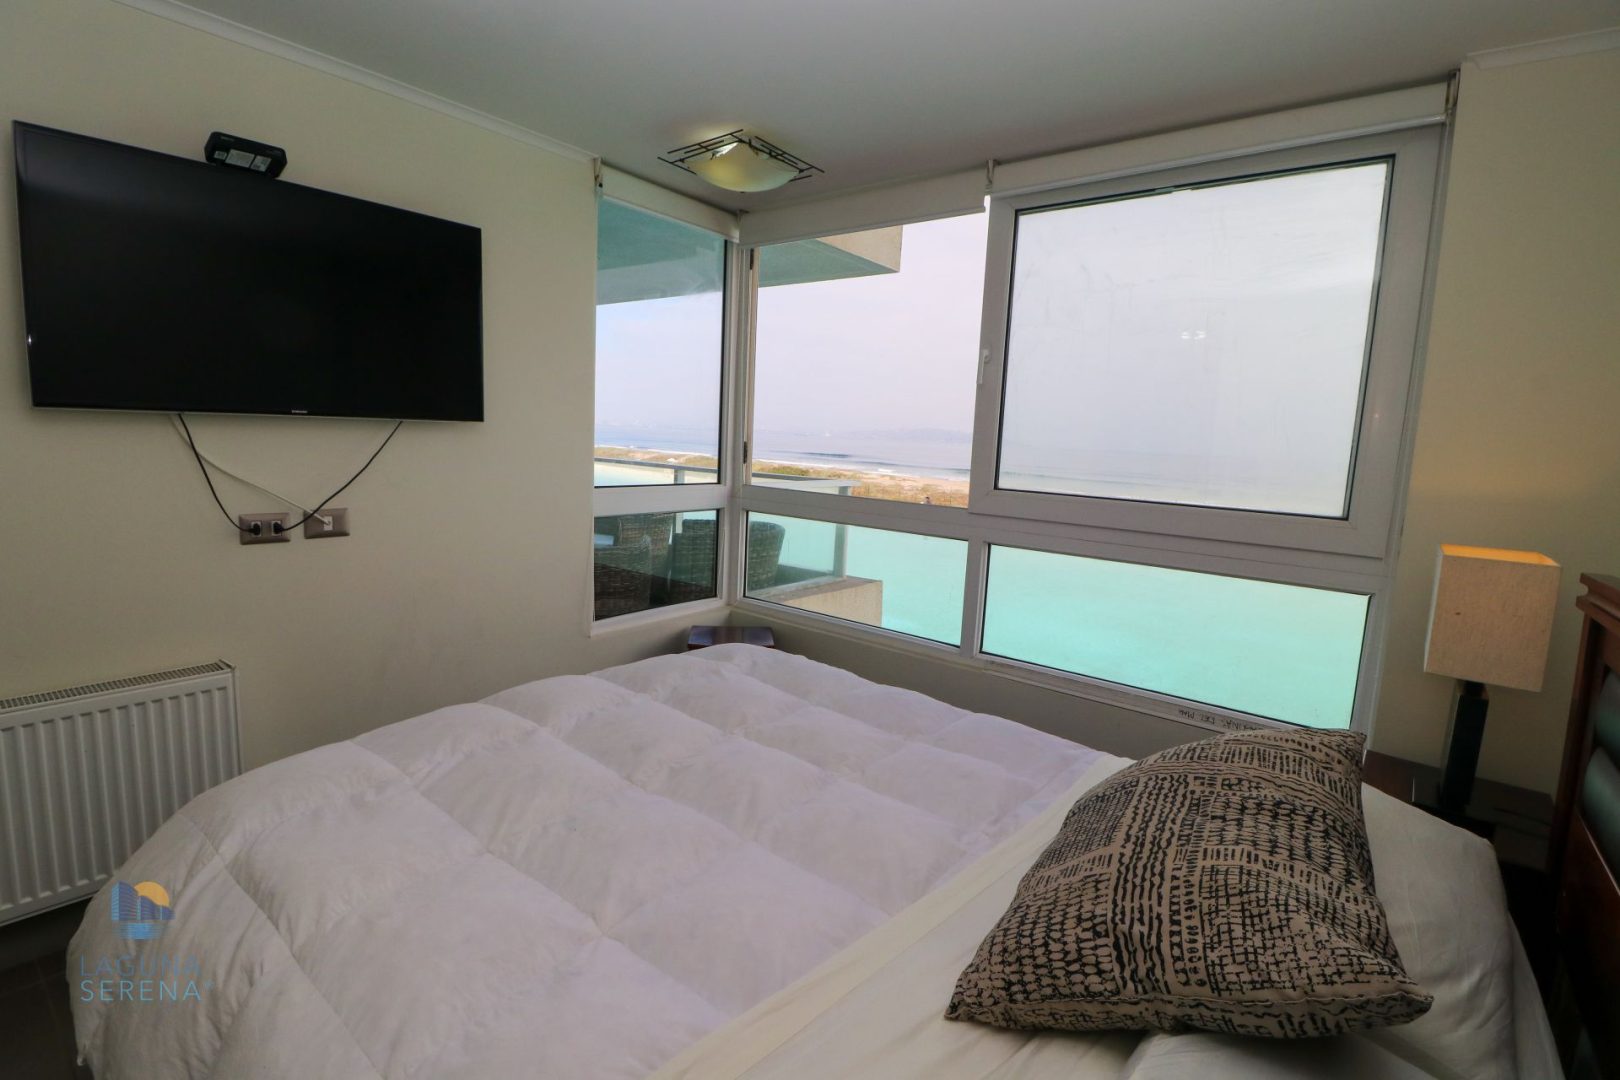 Dormitorio principal con vista al mar